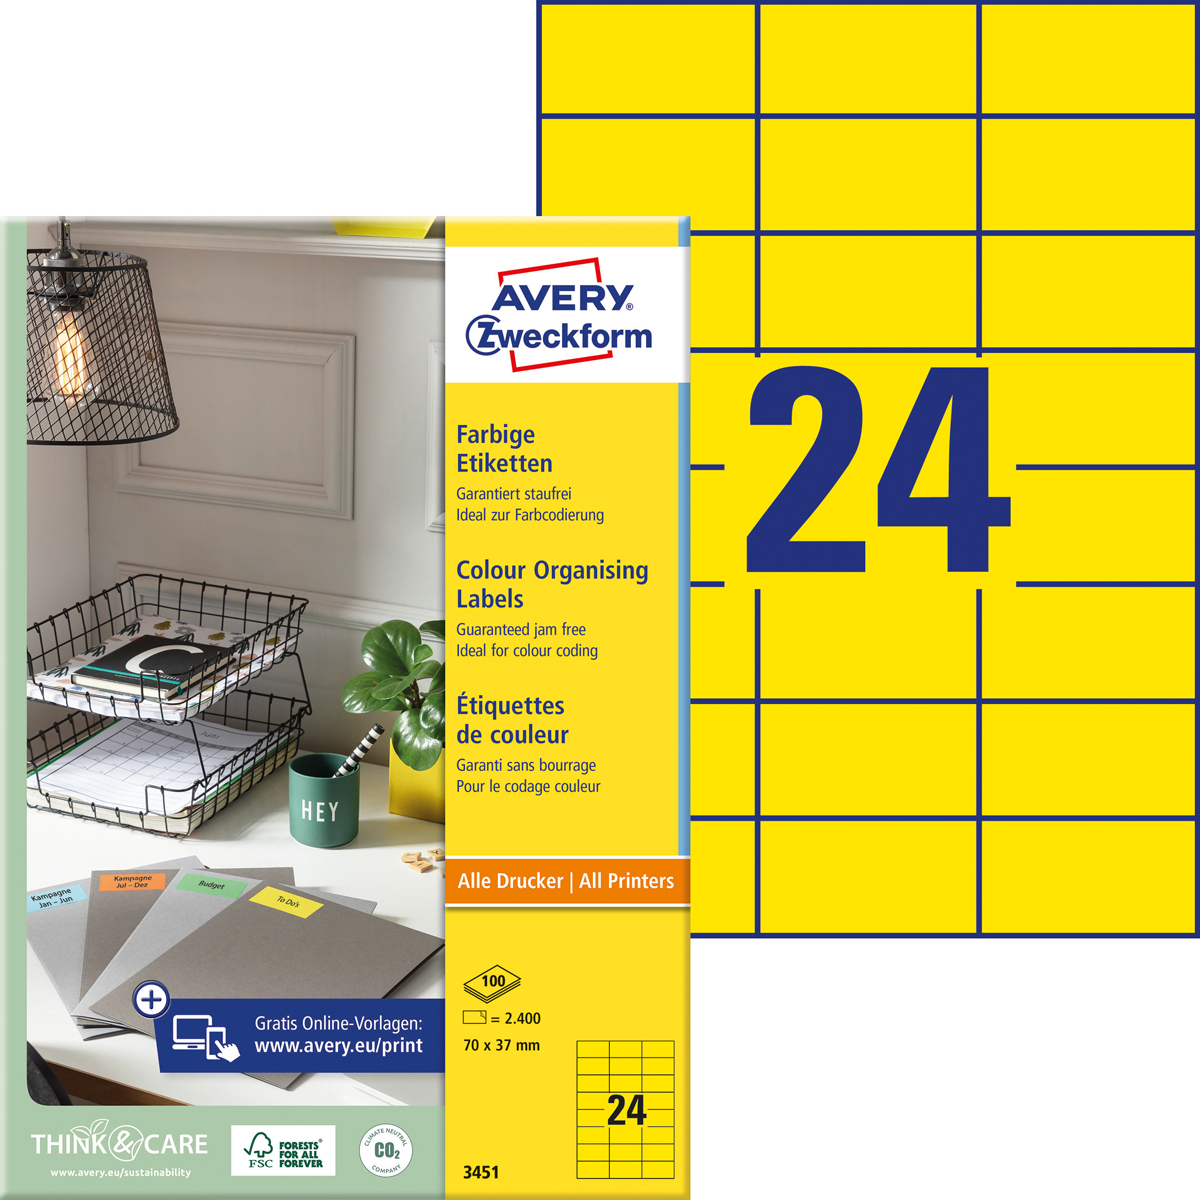 Avery Zweckform 3451 Farbige Etiketten, 70 x 37, mm, 100 Bogen/2.400 Etiketten, gelb